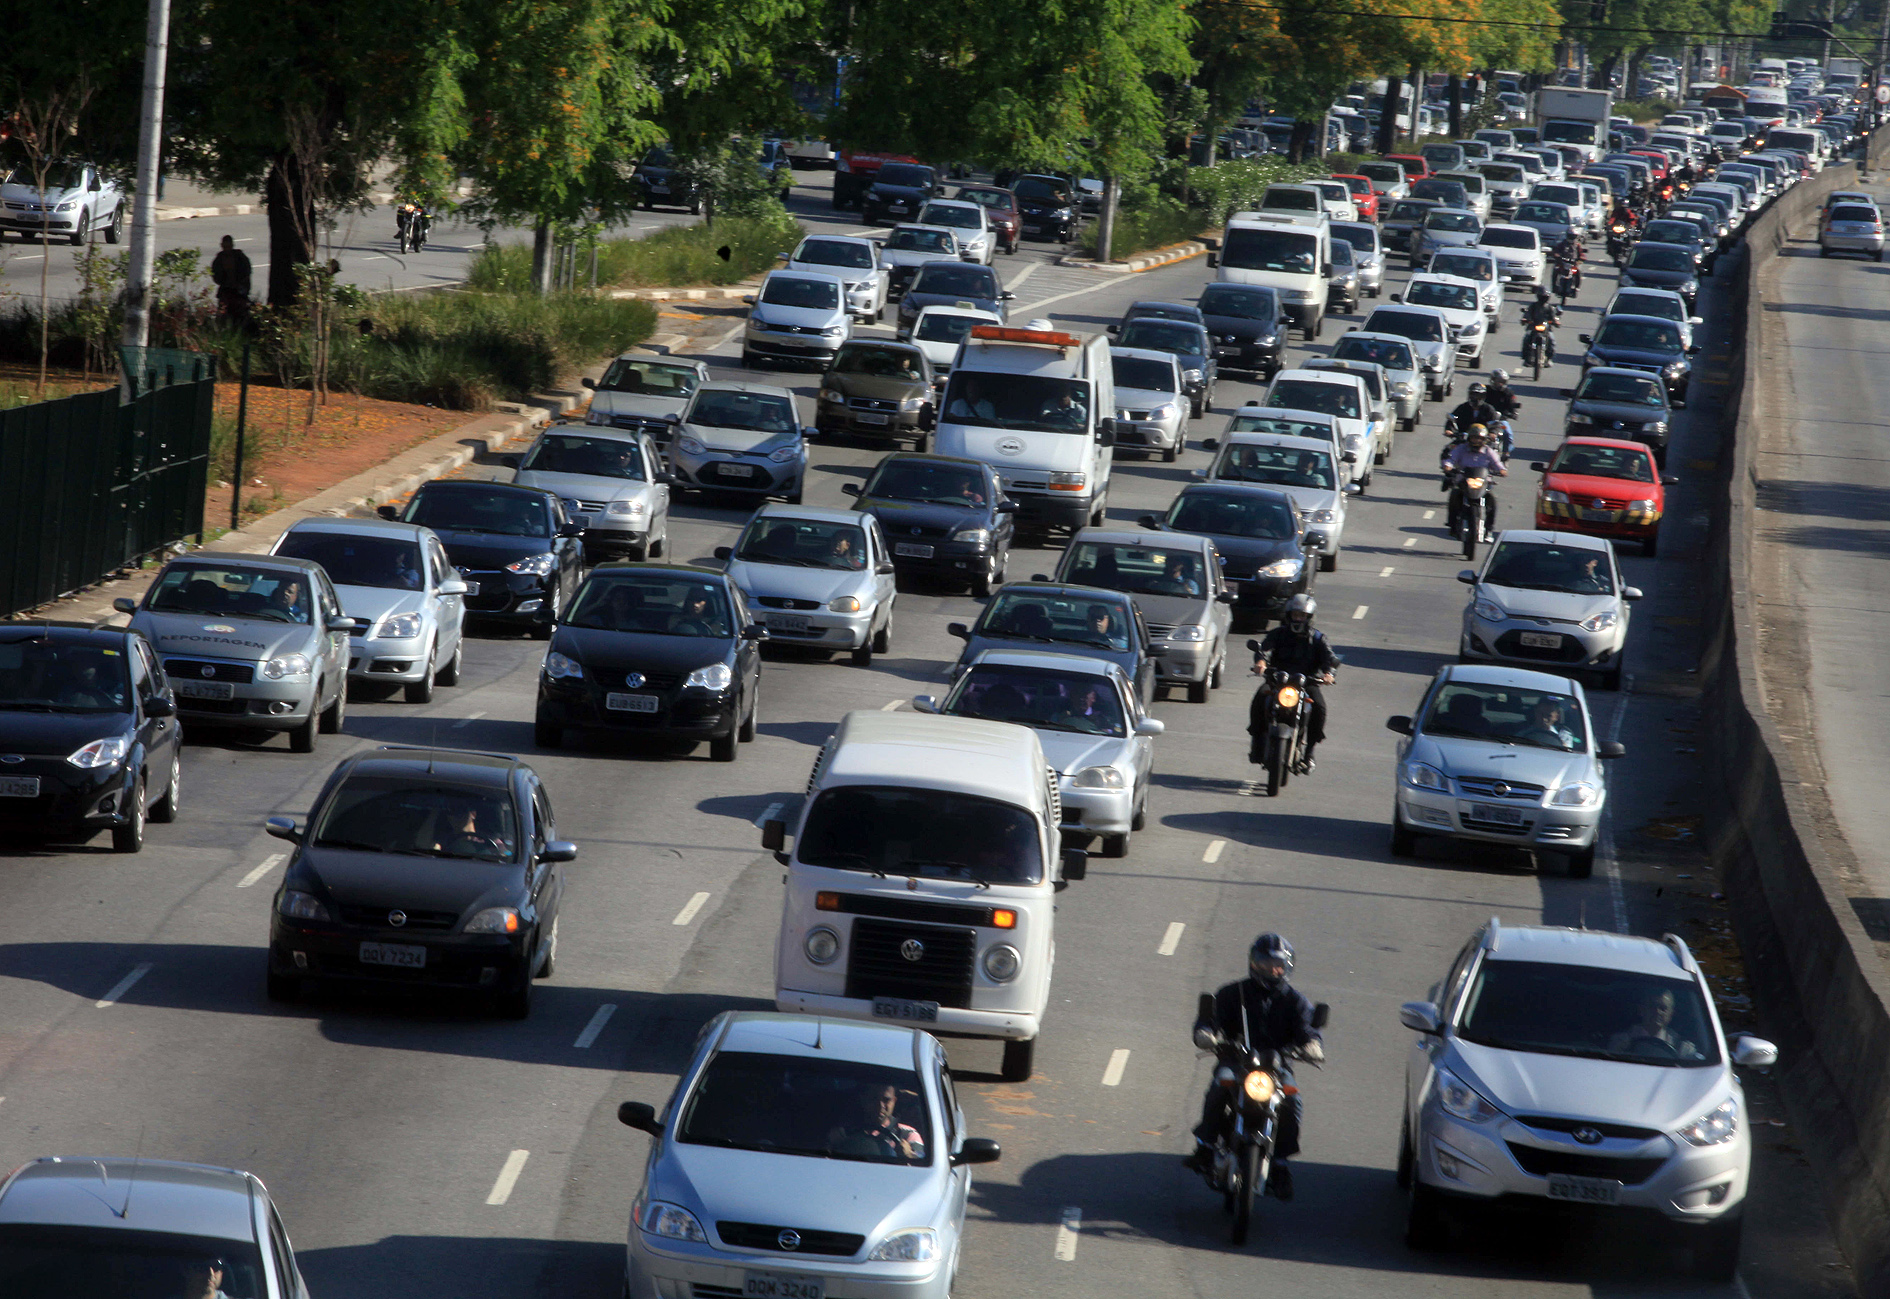 Motos poderão circular entre carros parados, aprova Congresso